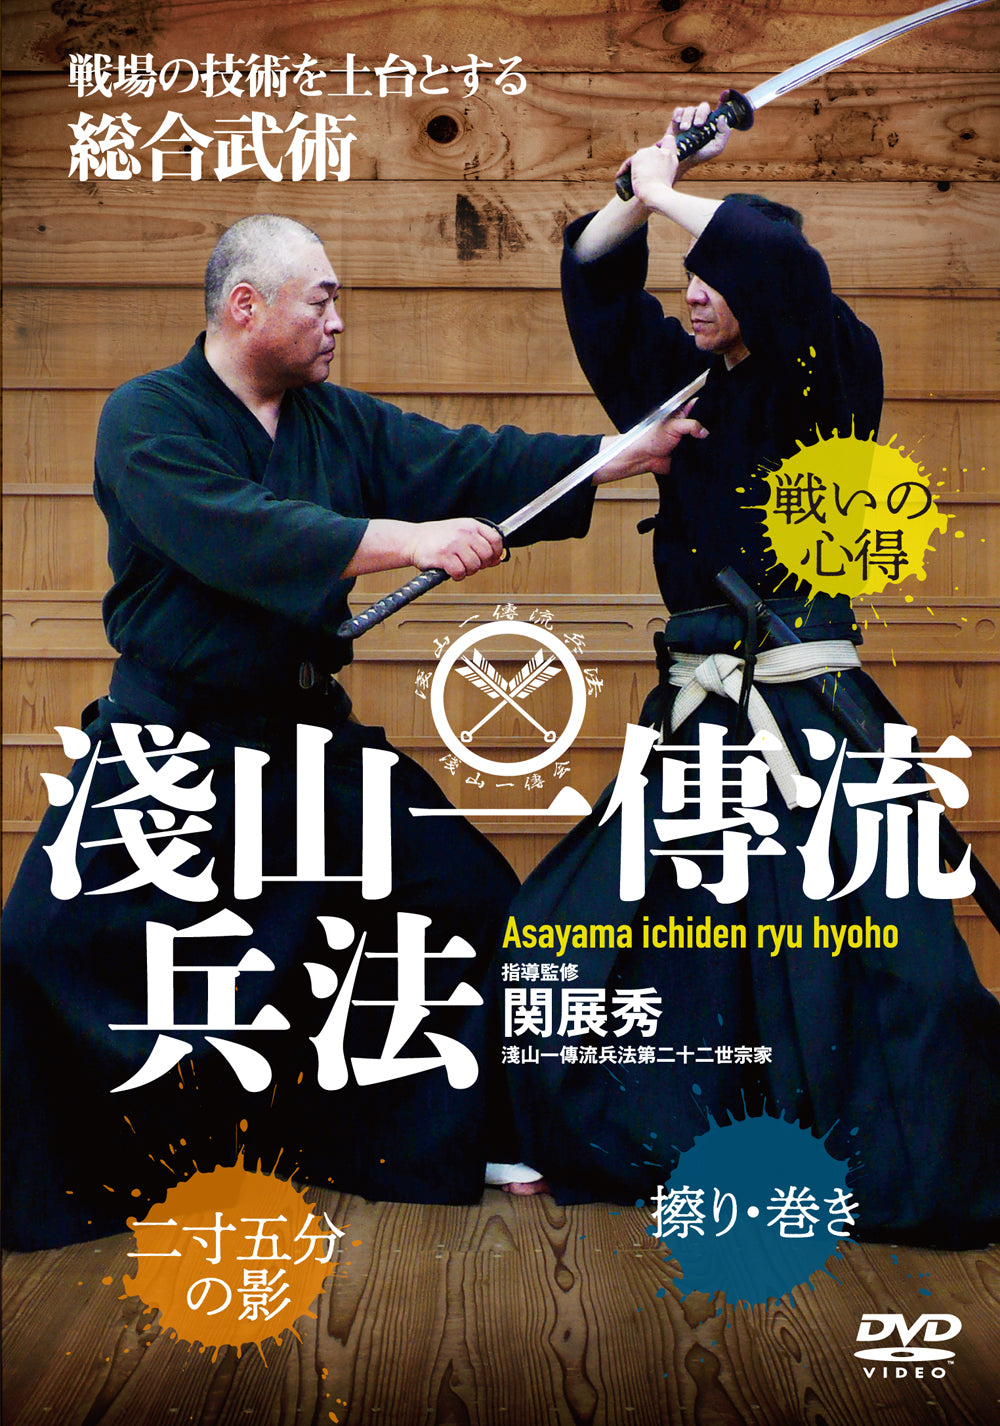 Asayama Ichiden Ryu Hyoho DVD by Nobuhide Seki – Budovideos Inc